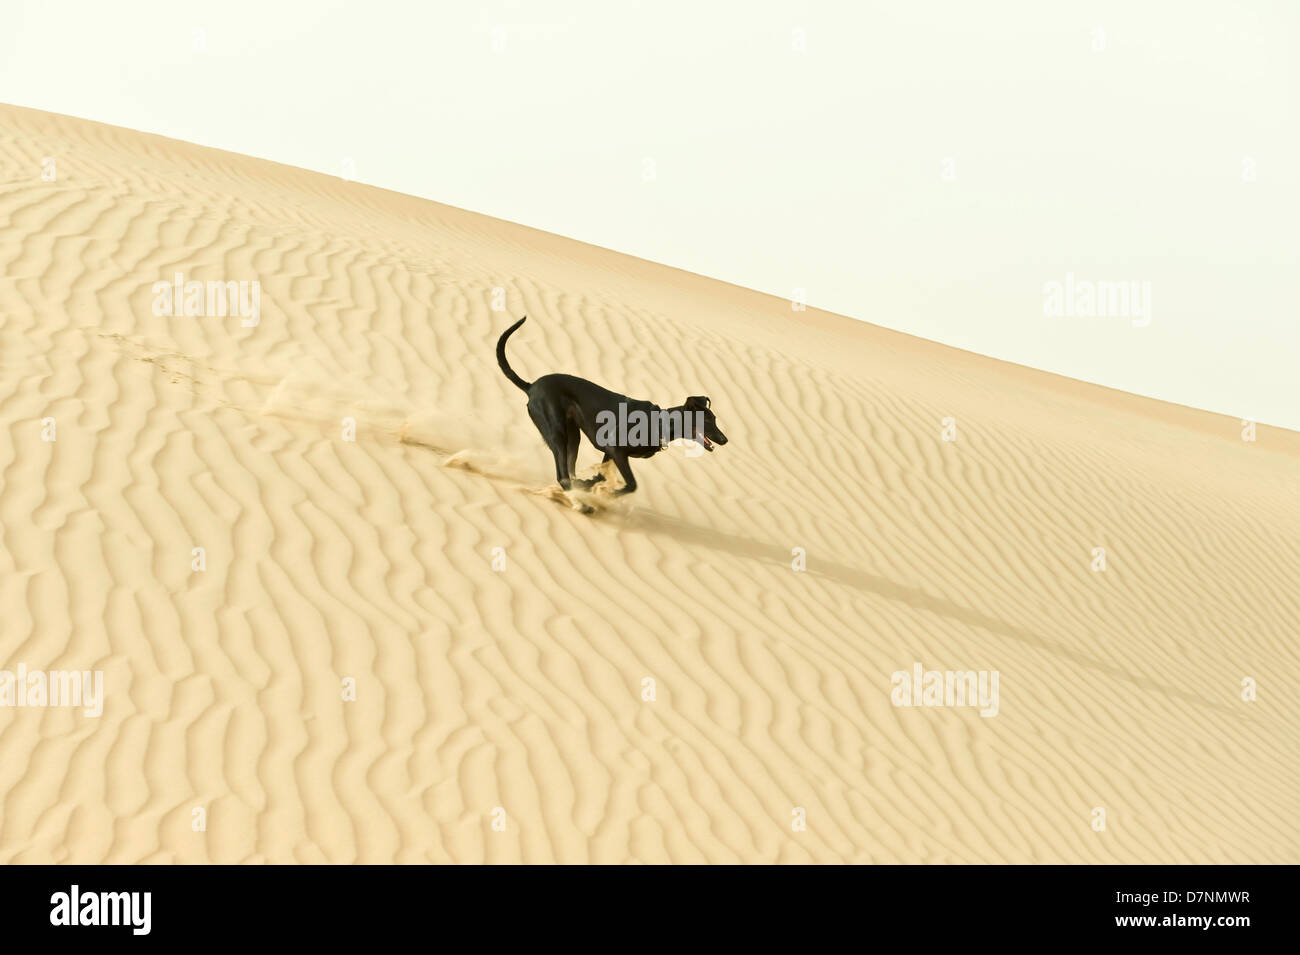 Un typique chien 'desert', une croix noire saluki fonctionnant sur dunes de sable dans le désert, Abu Dhabi Banque D'Images